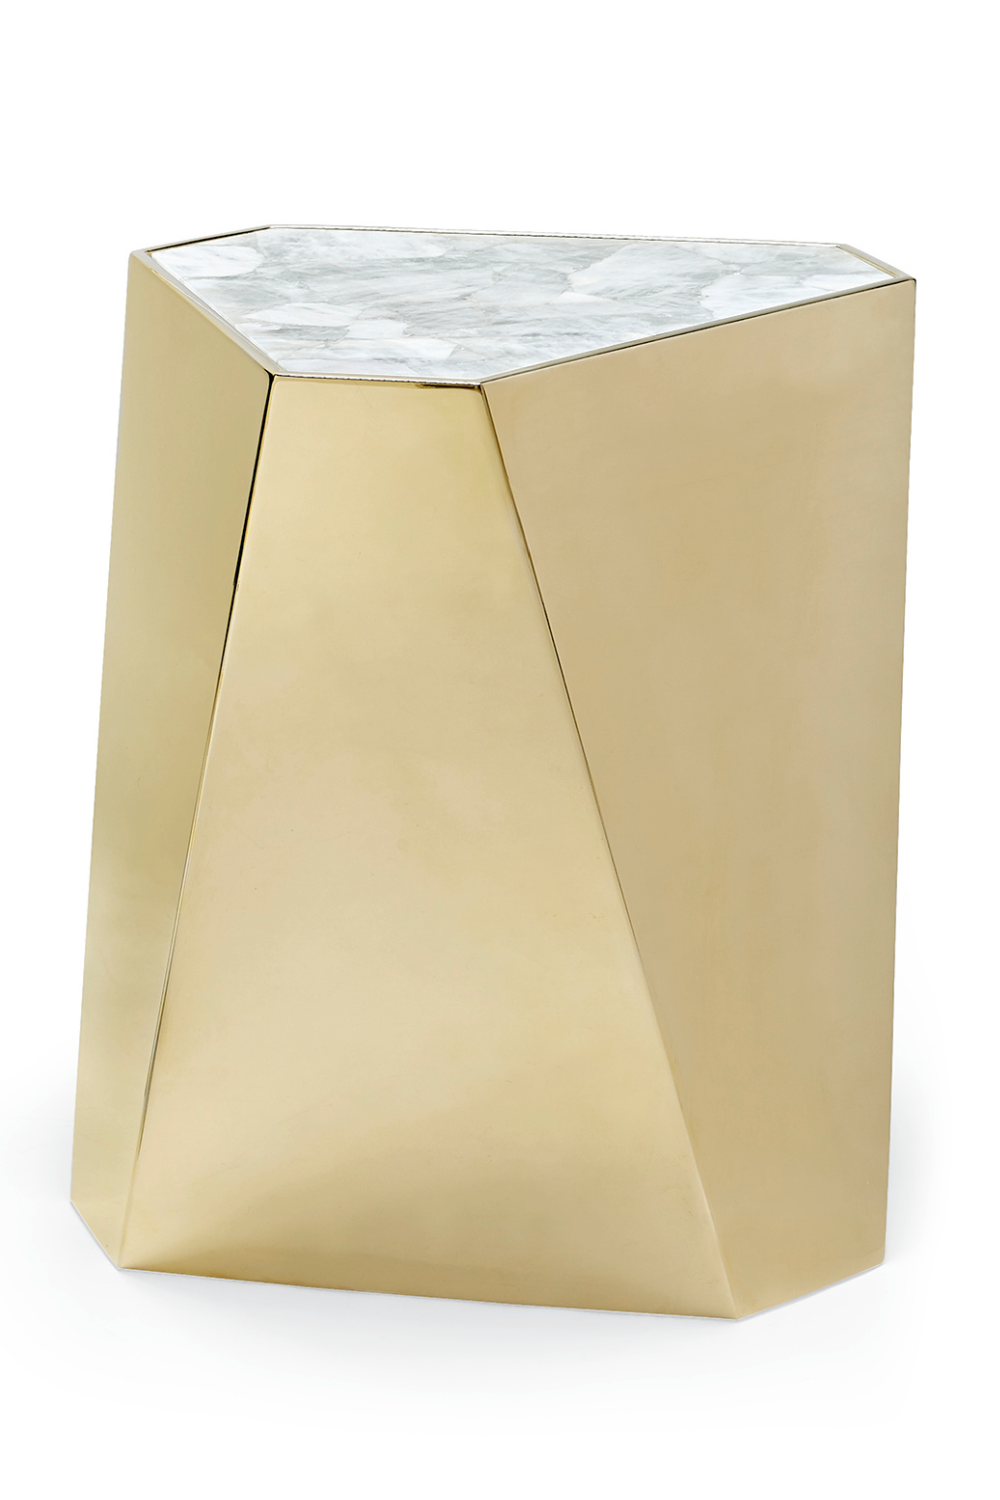 Gold Hexagonal End Table | Caracole The Contempo | Oroa.com